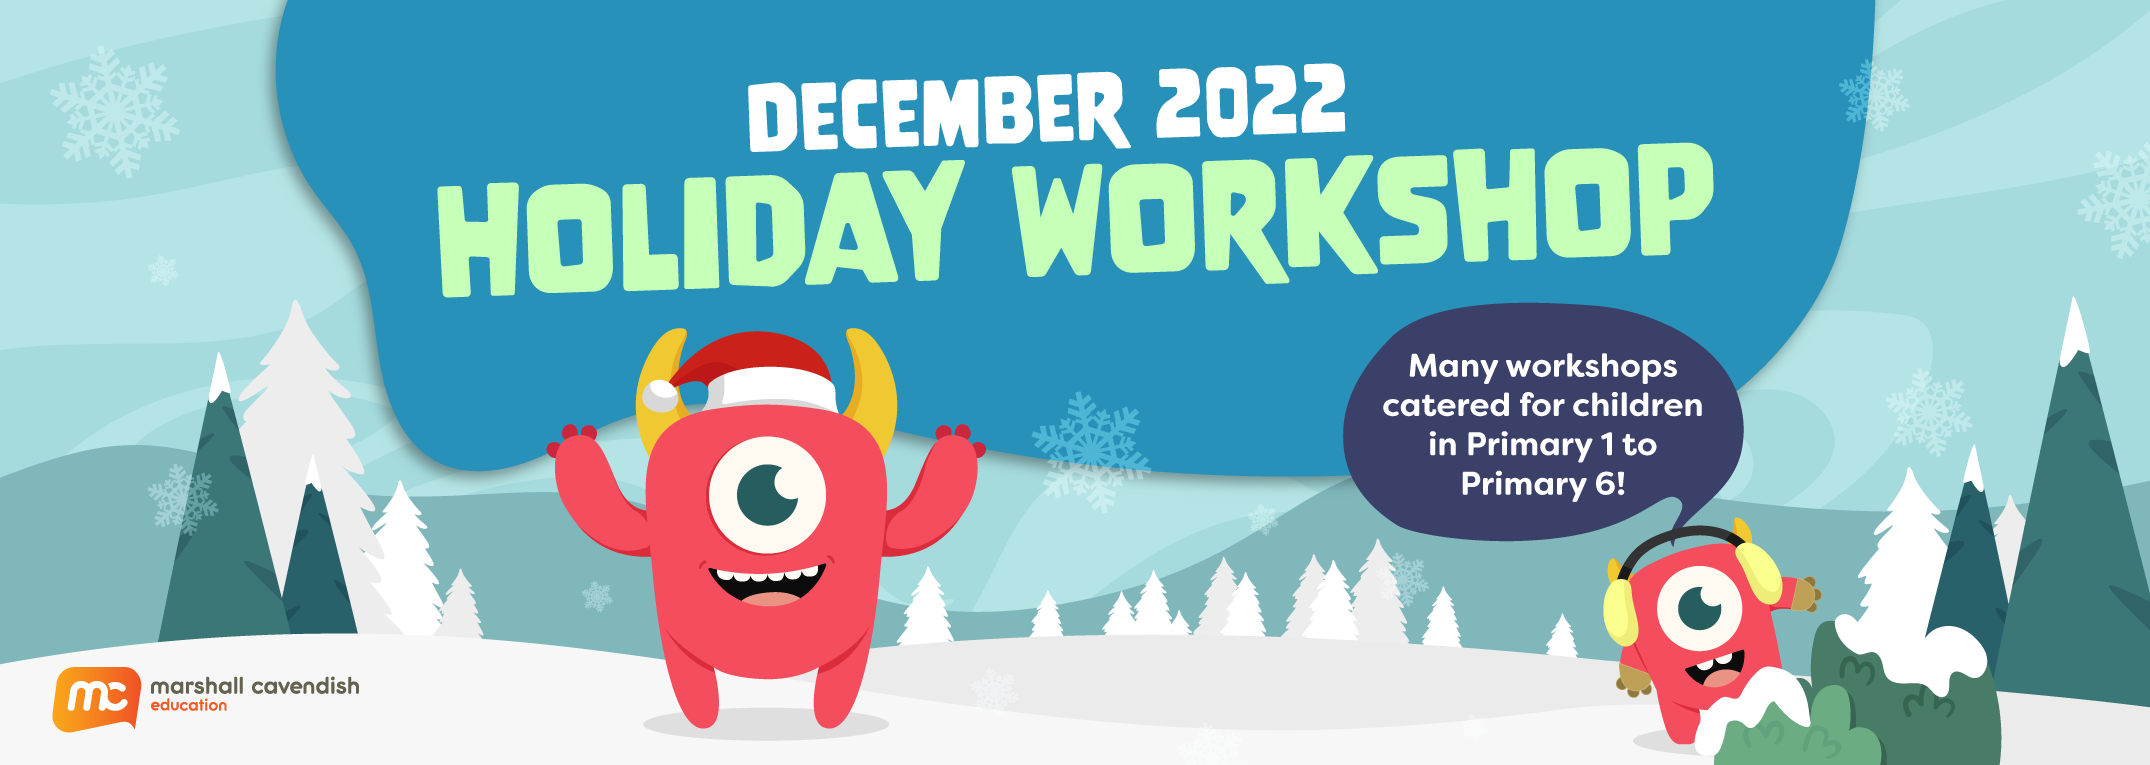 December 2022 Holiday Workshop